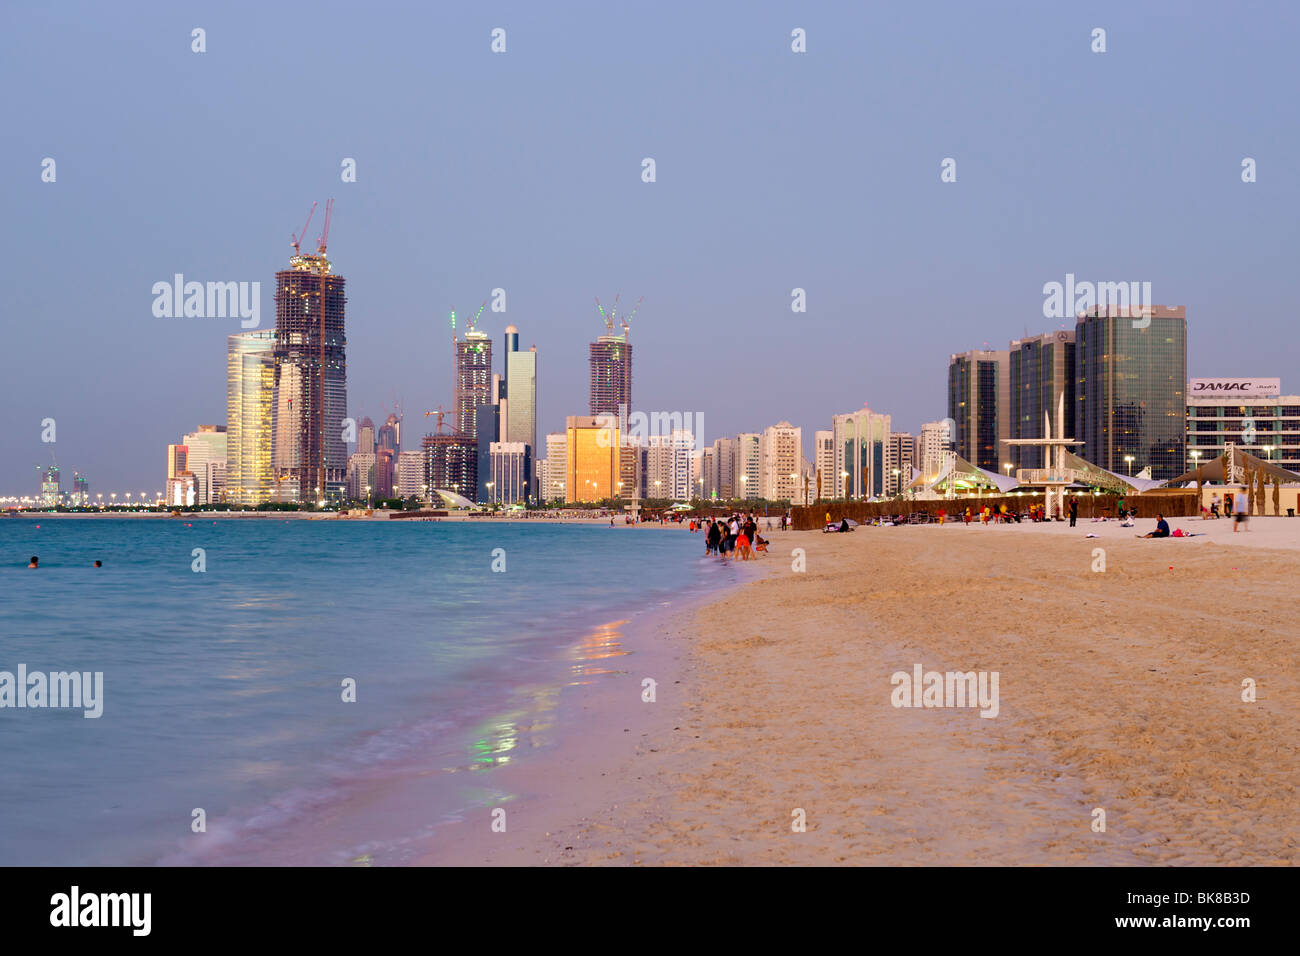 Abenddämmerung Blick auf den Strand und die Gebäude in Abu Dhabi in den Vereinigten Arabischen Emiraten. Stockfoto